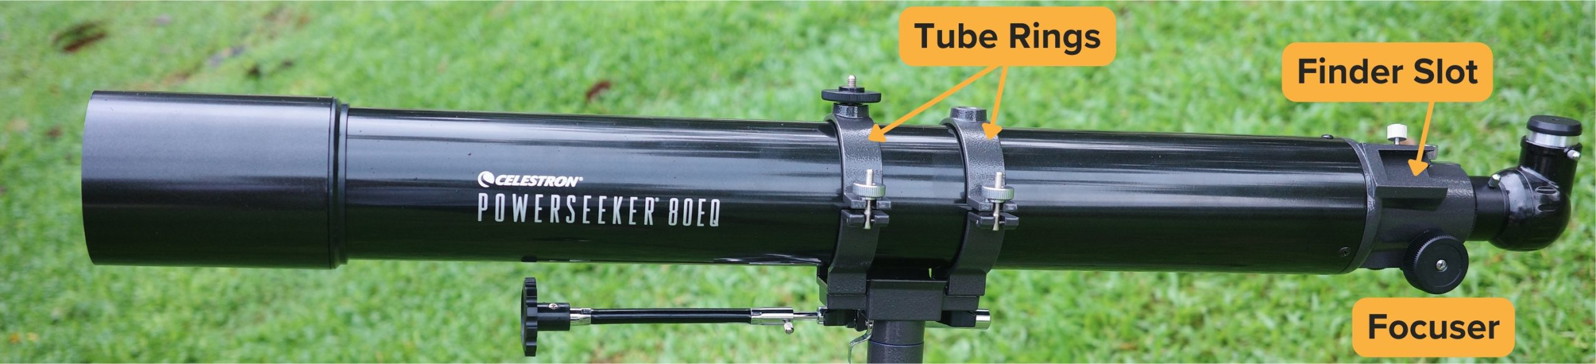 Powerseeker 80EQ optical tube